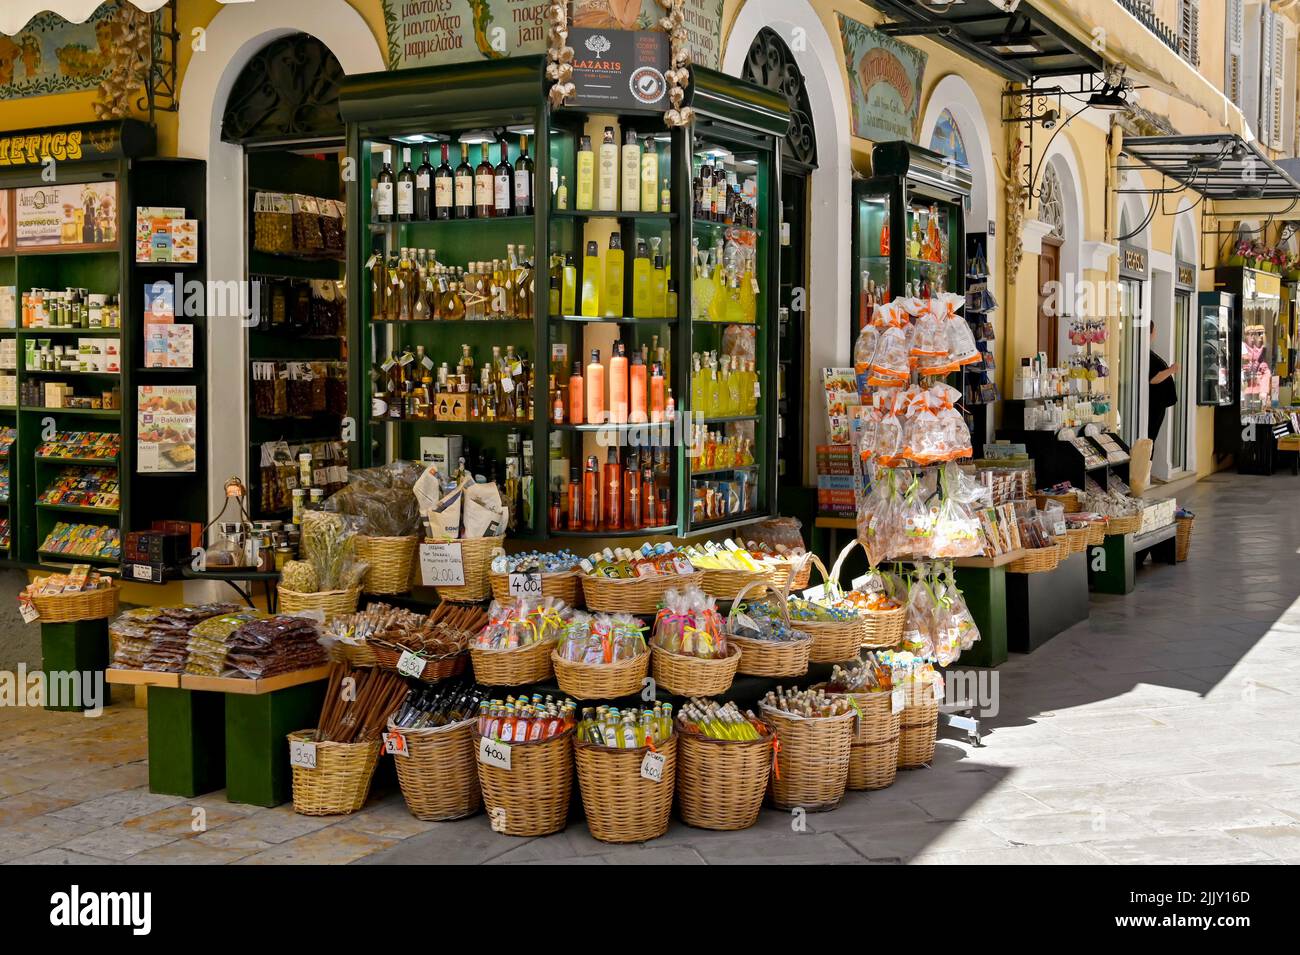 Corfú, Grecia - 2022 de junio: Productos a la venta fuera de una tienda de comida y bebida en una de las calles estrechas de la parte antigua de la ciudad de Corfú Foto de stock